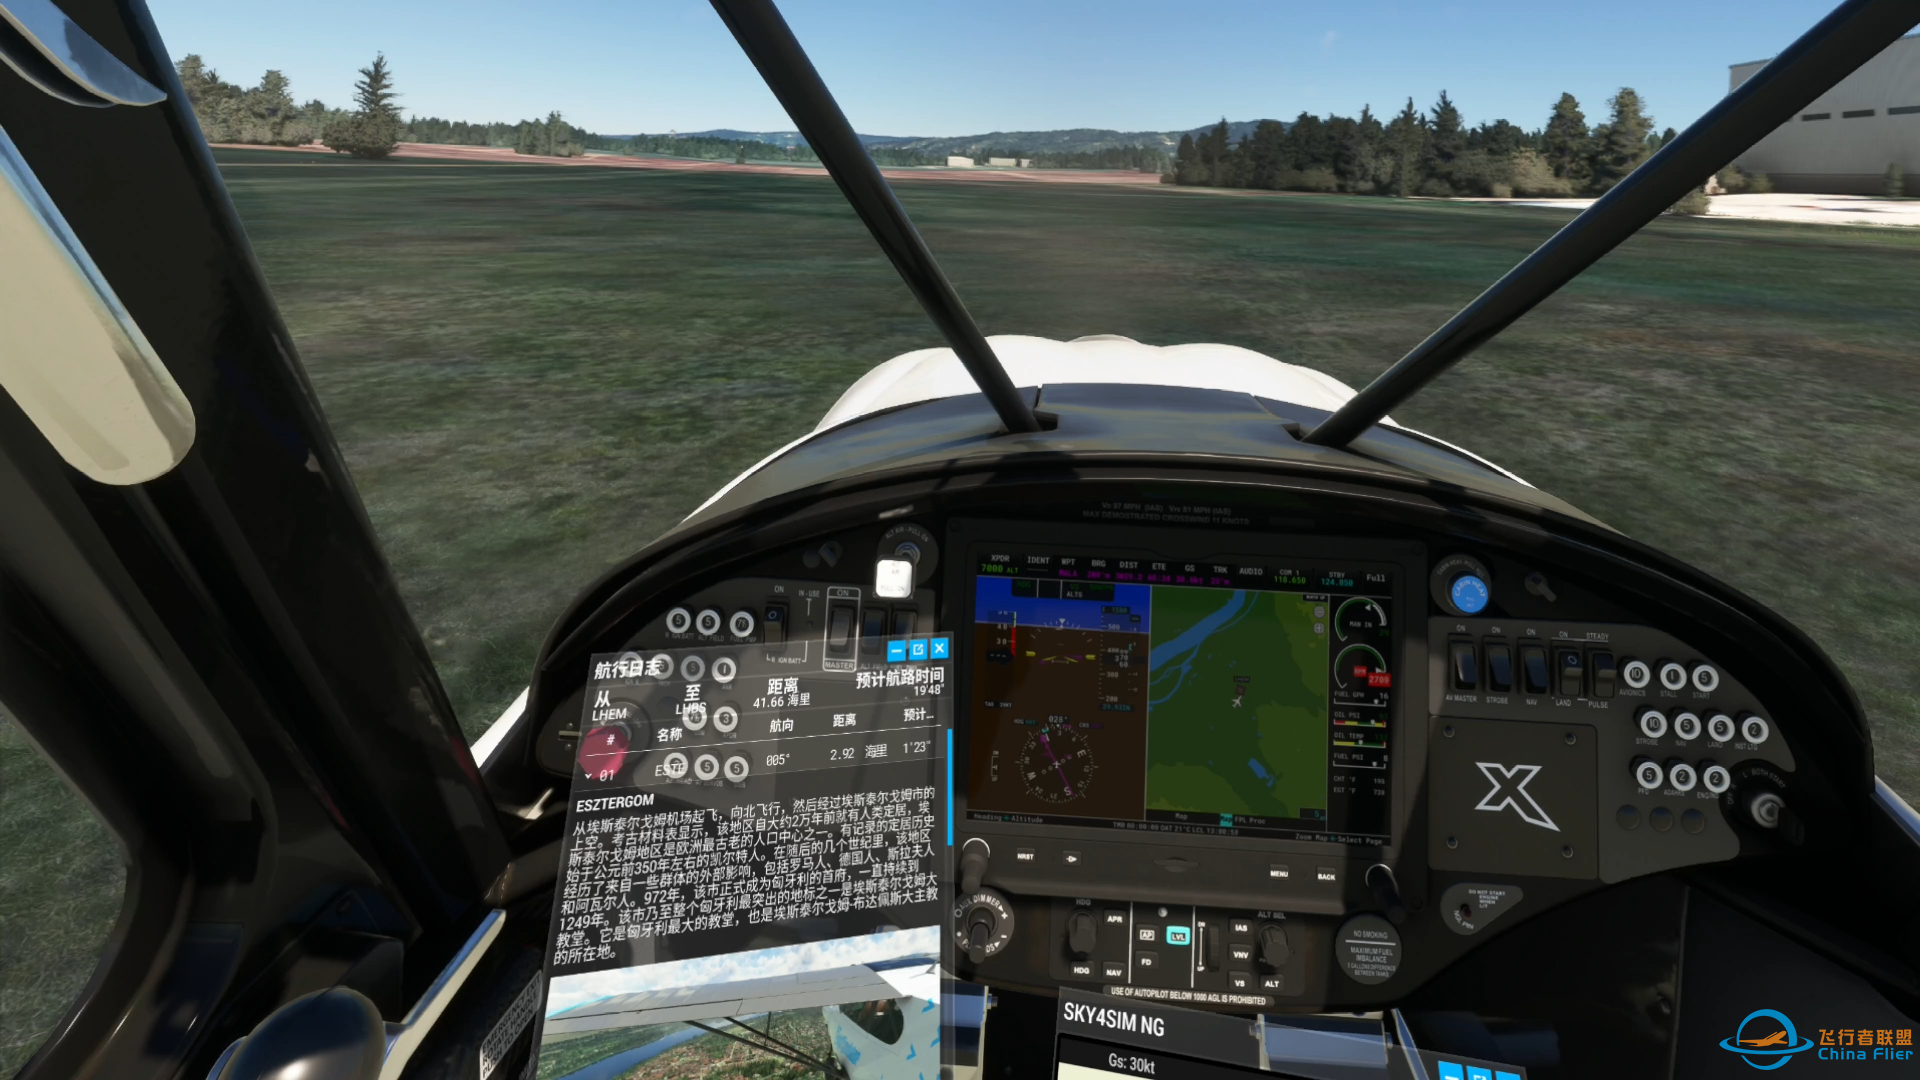 微软模拟飞行 596 VR 多瑙河之旅 郊野之行-1542 